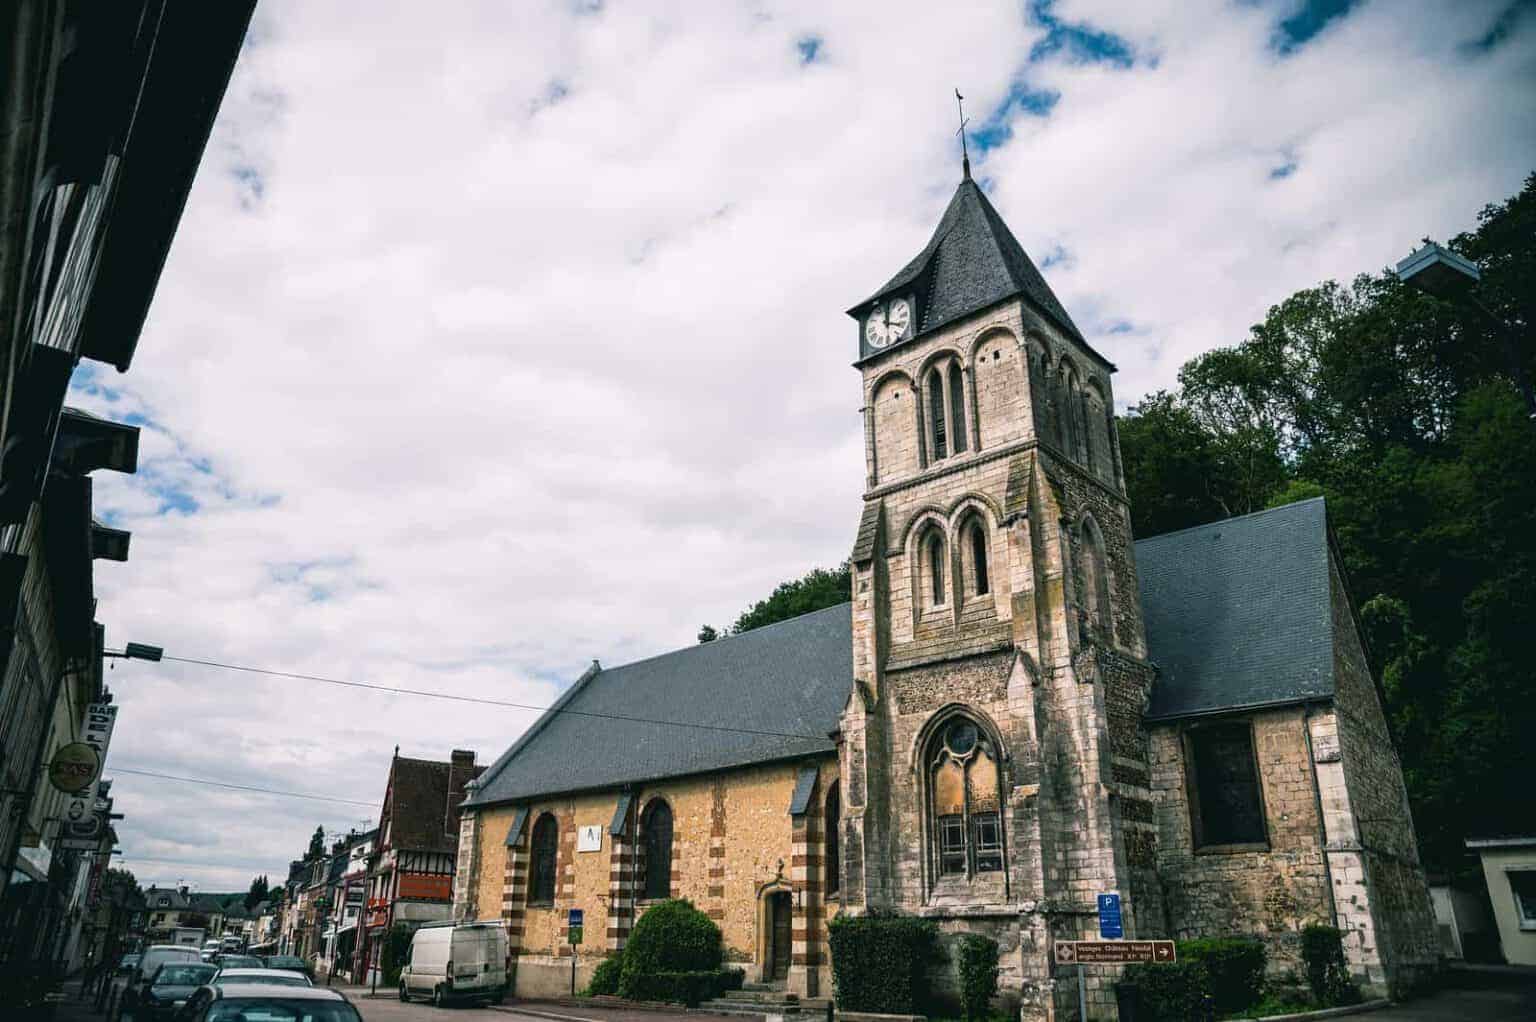 Une église historique en pierre avec une tour d'horloge, située le long d'une rue d'une ville européenne.